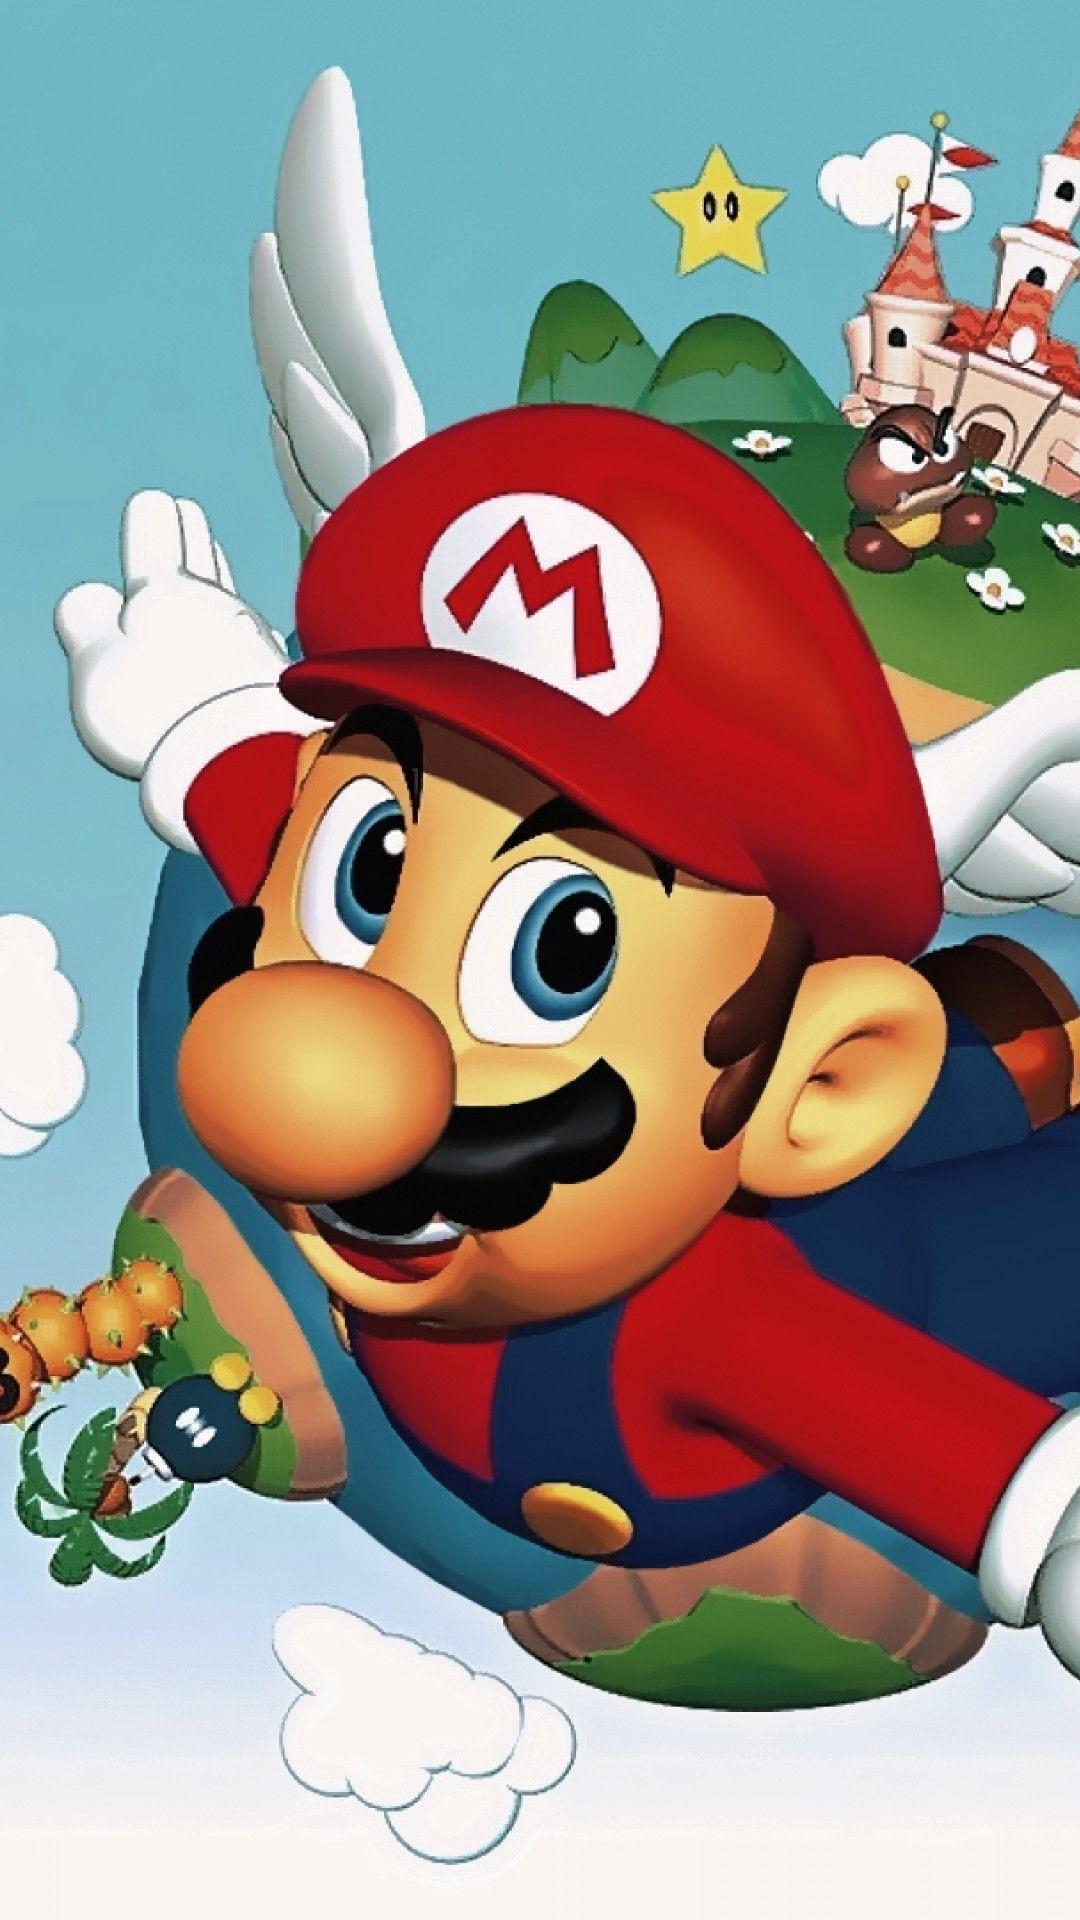 Super Mario 64 Quotes iPhone 6 Plus